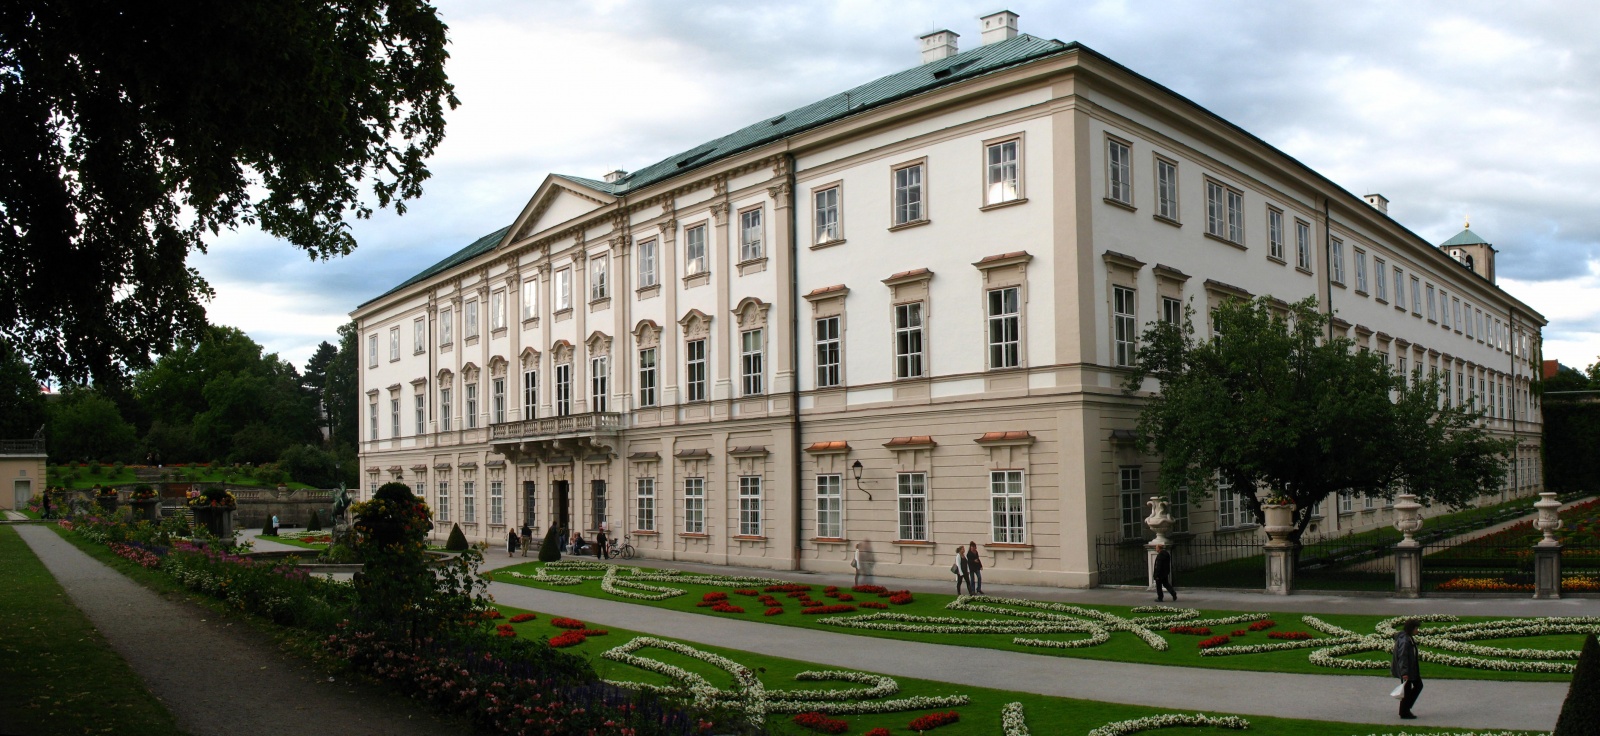 Дворец Мирабель (Schloss Mirabell) – одна из восхитительных достопримечательностей в Зальцбурге, находится под защитой ЮНЕСКО